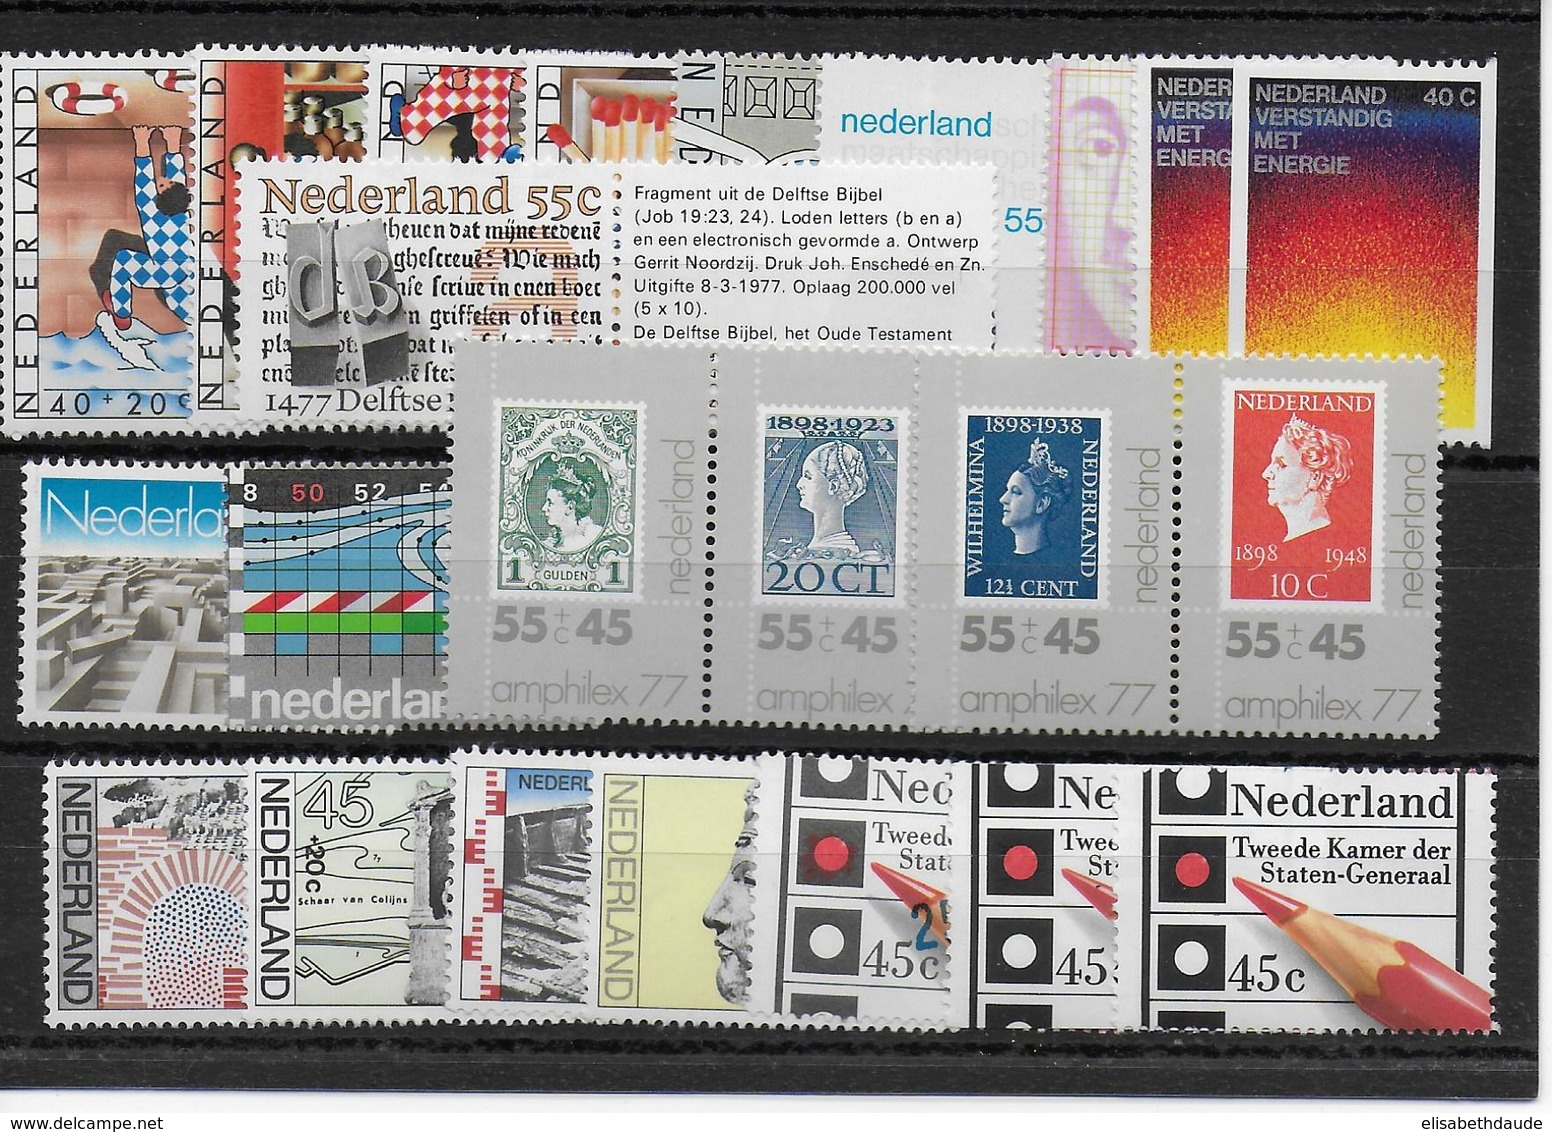 NEDERLAND - ANNEE COMPLETE 1977 ** MNH - COTE YVERT = 20 EUR. - 23 VALEURS - Volledig Jaar